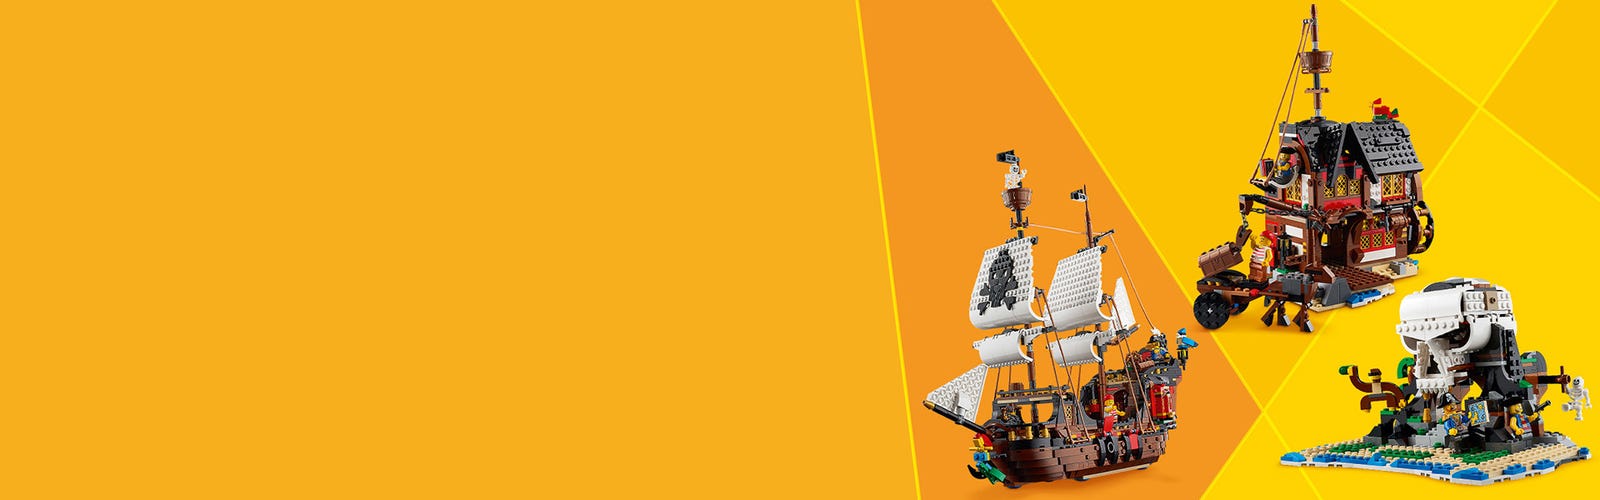 31109 - LEGO® Creator - Le bateau pirate LEGO : King Jouet, Lego